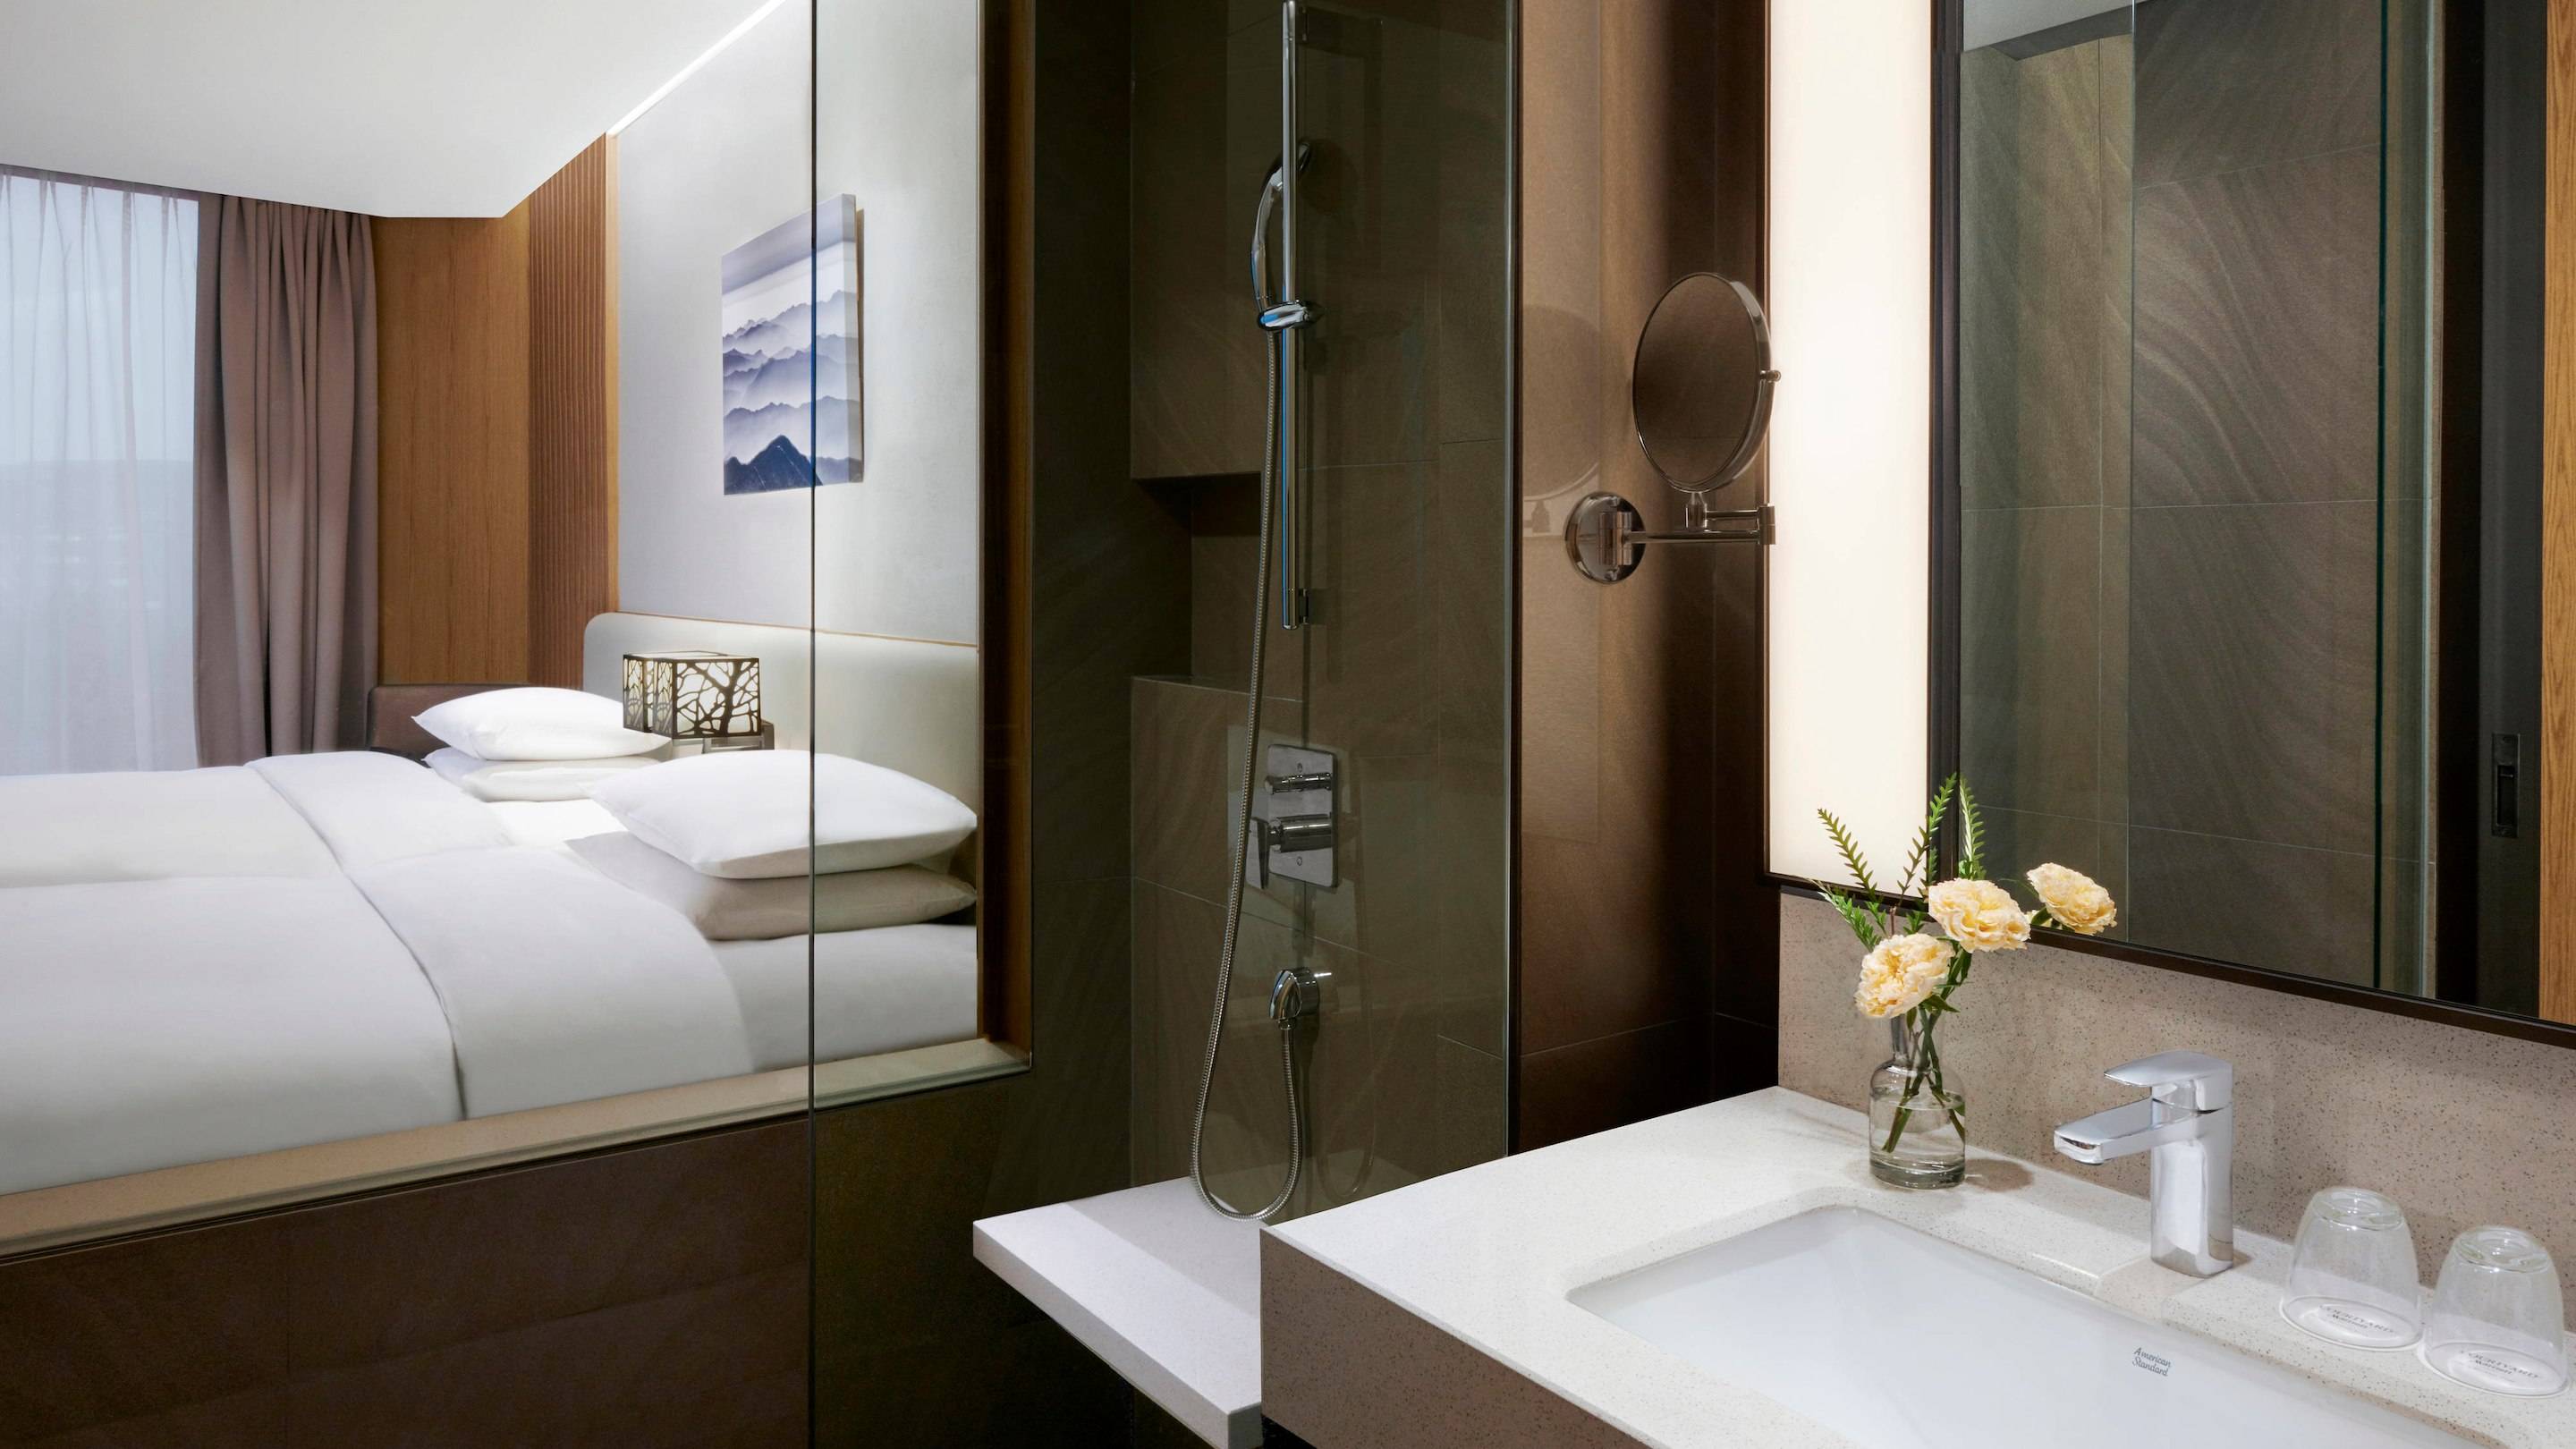 2019首爾新酒店 廁所和房間是用了玻璃來分隔開。